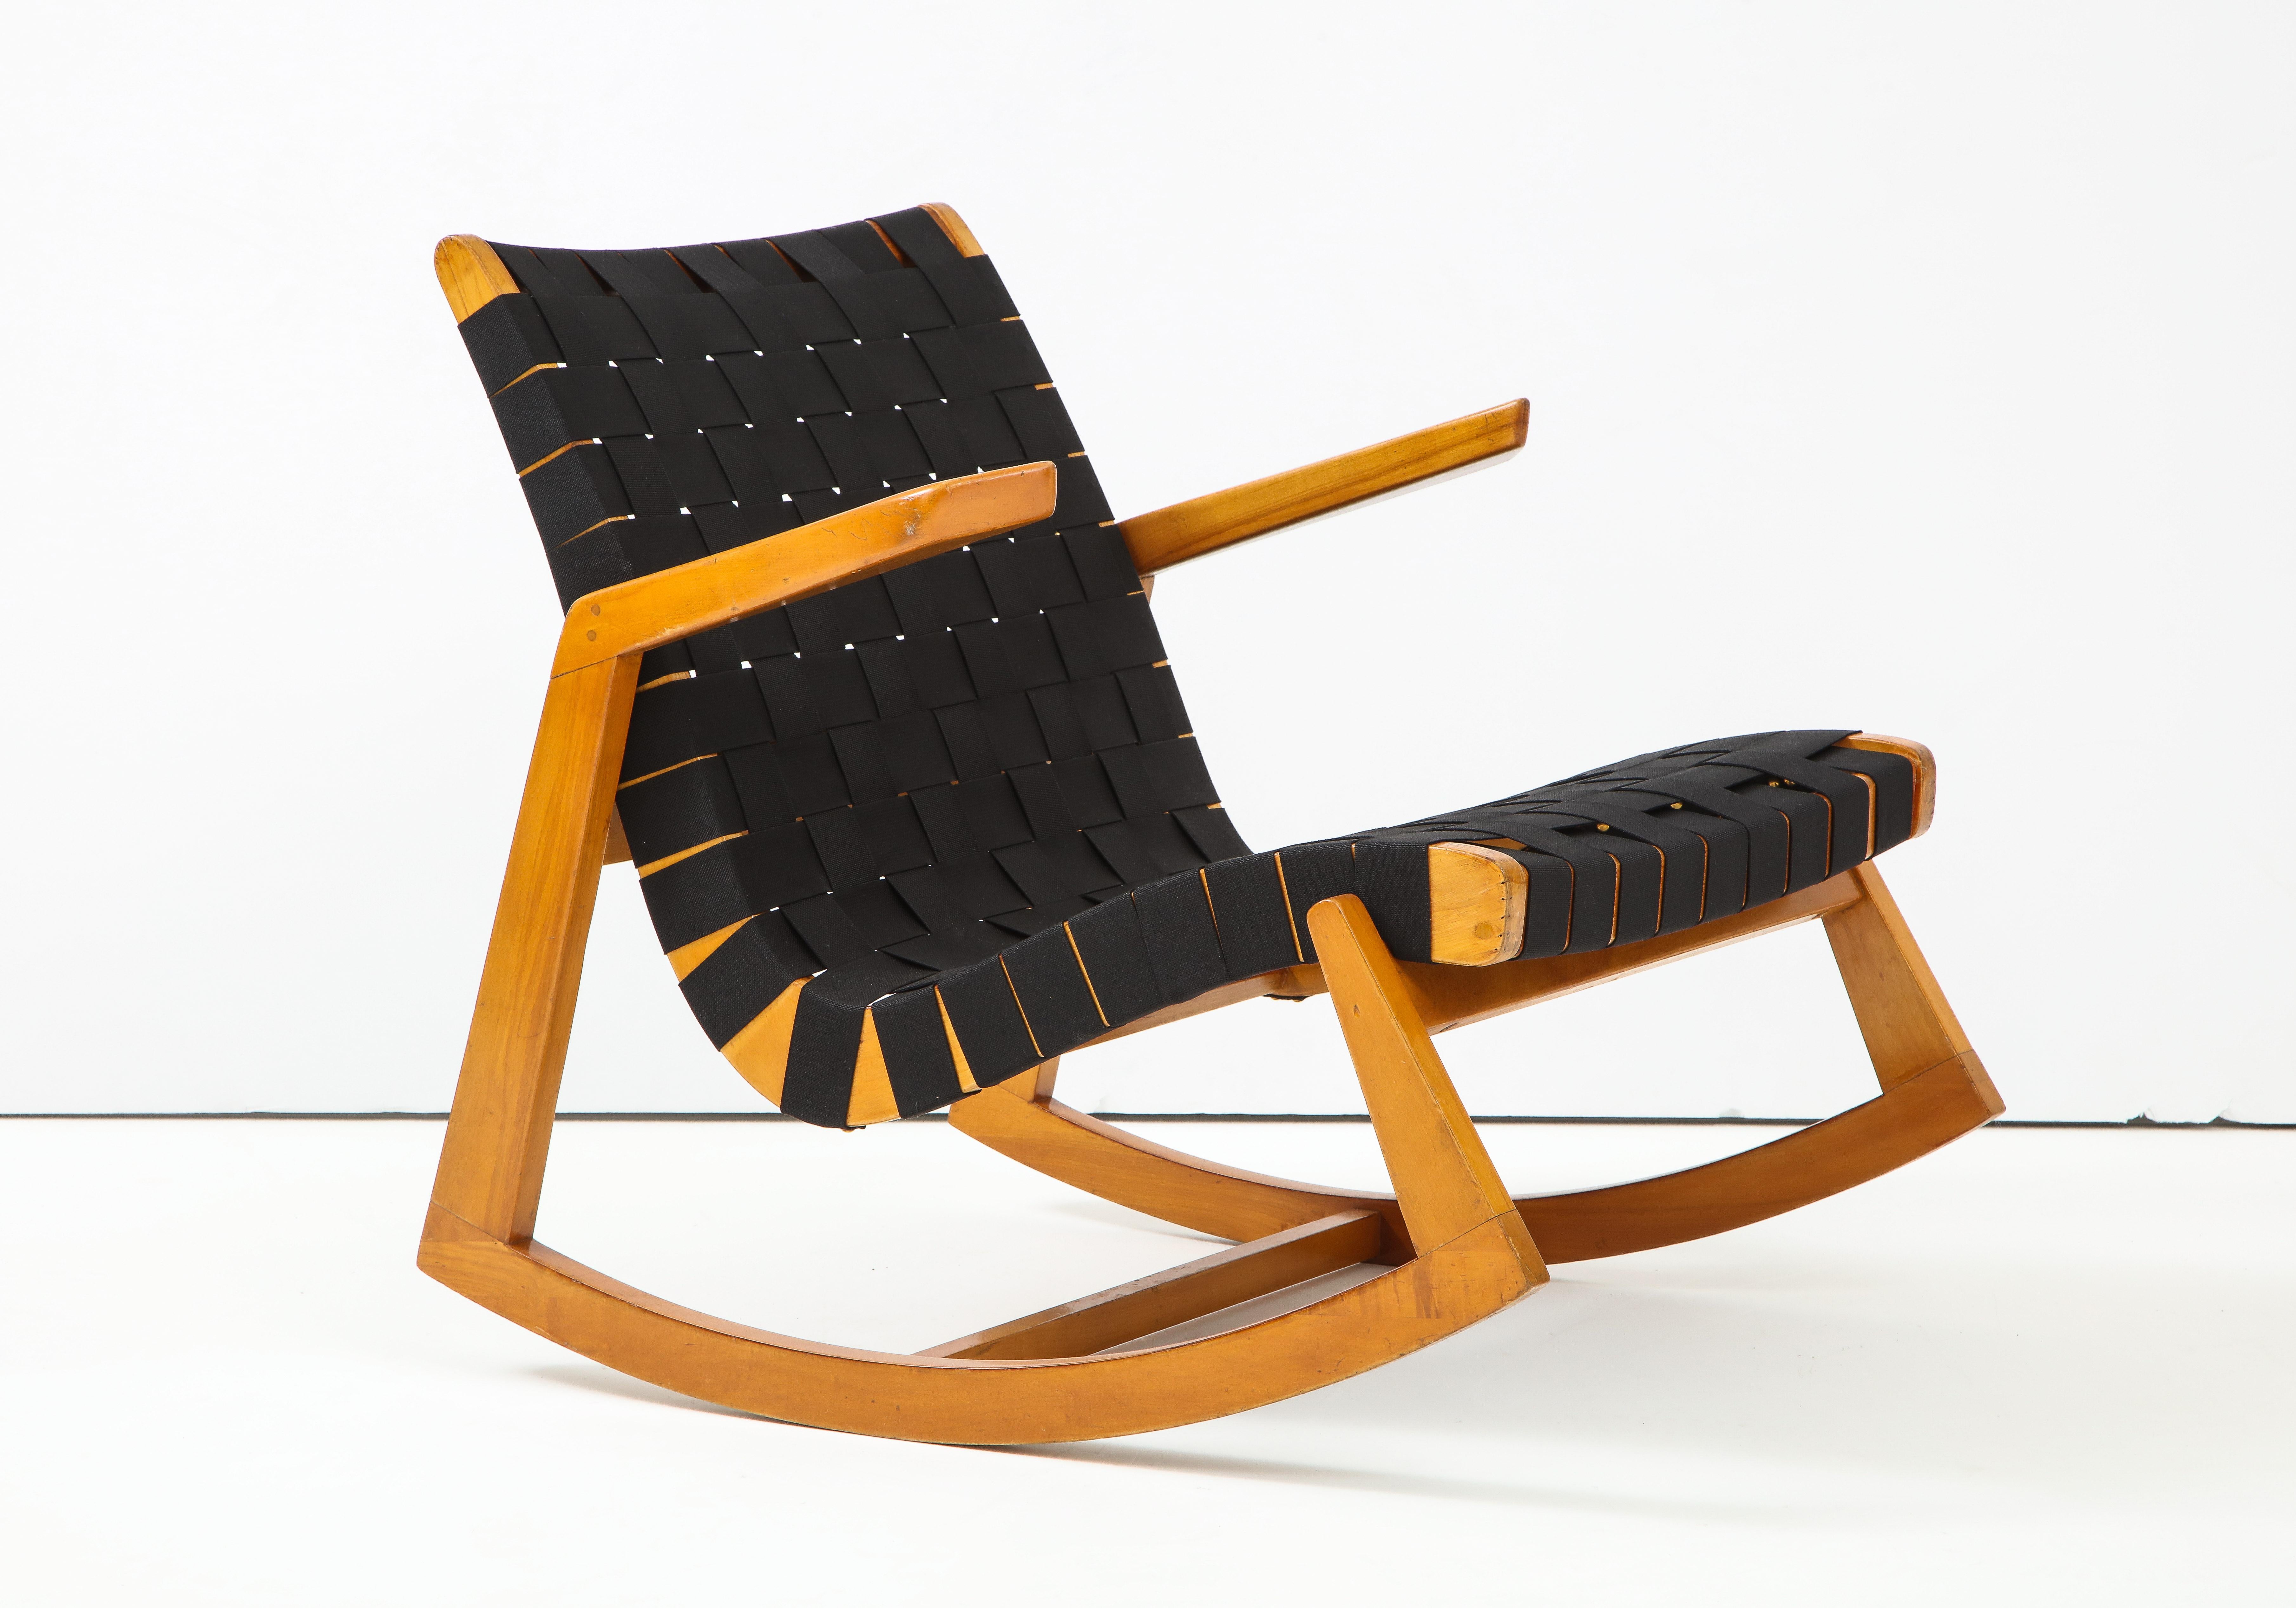 Rocker conçu par l'architecte Ralph Rapson, basé à Minneapolis. Fait partie d'une série de chaises conçues pour Knoll et produites pendant une courte période juste après la Seconde Guerre mondiale. Rapson était étudiant à Cranbrook et contemporain